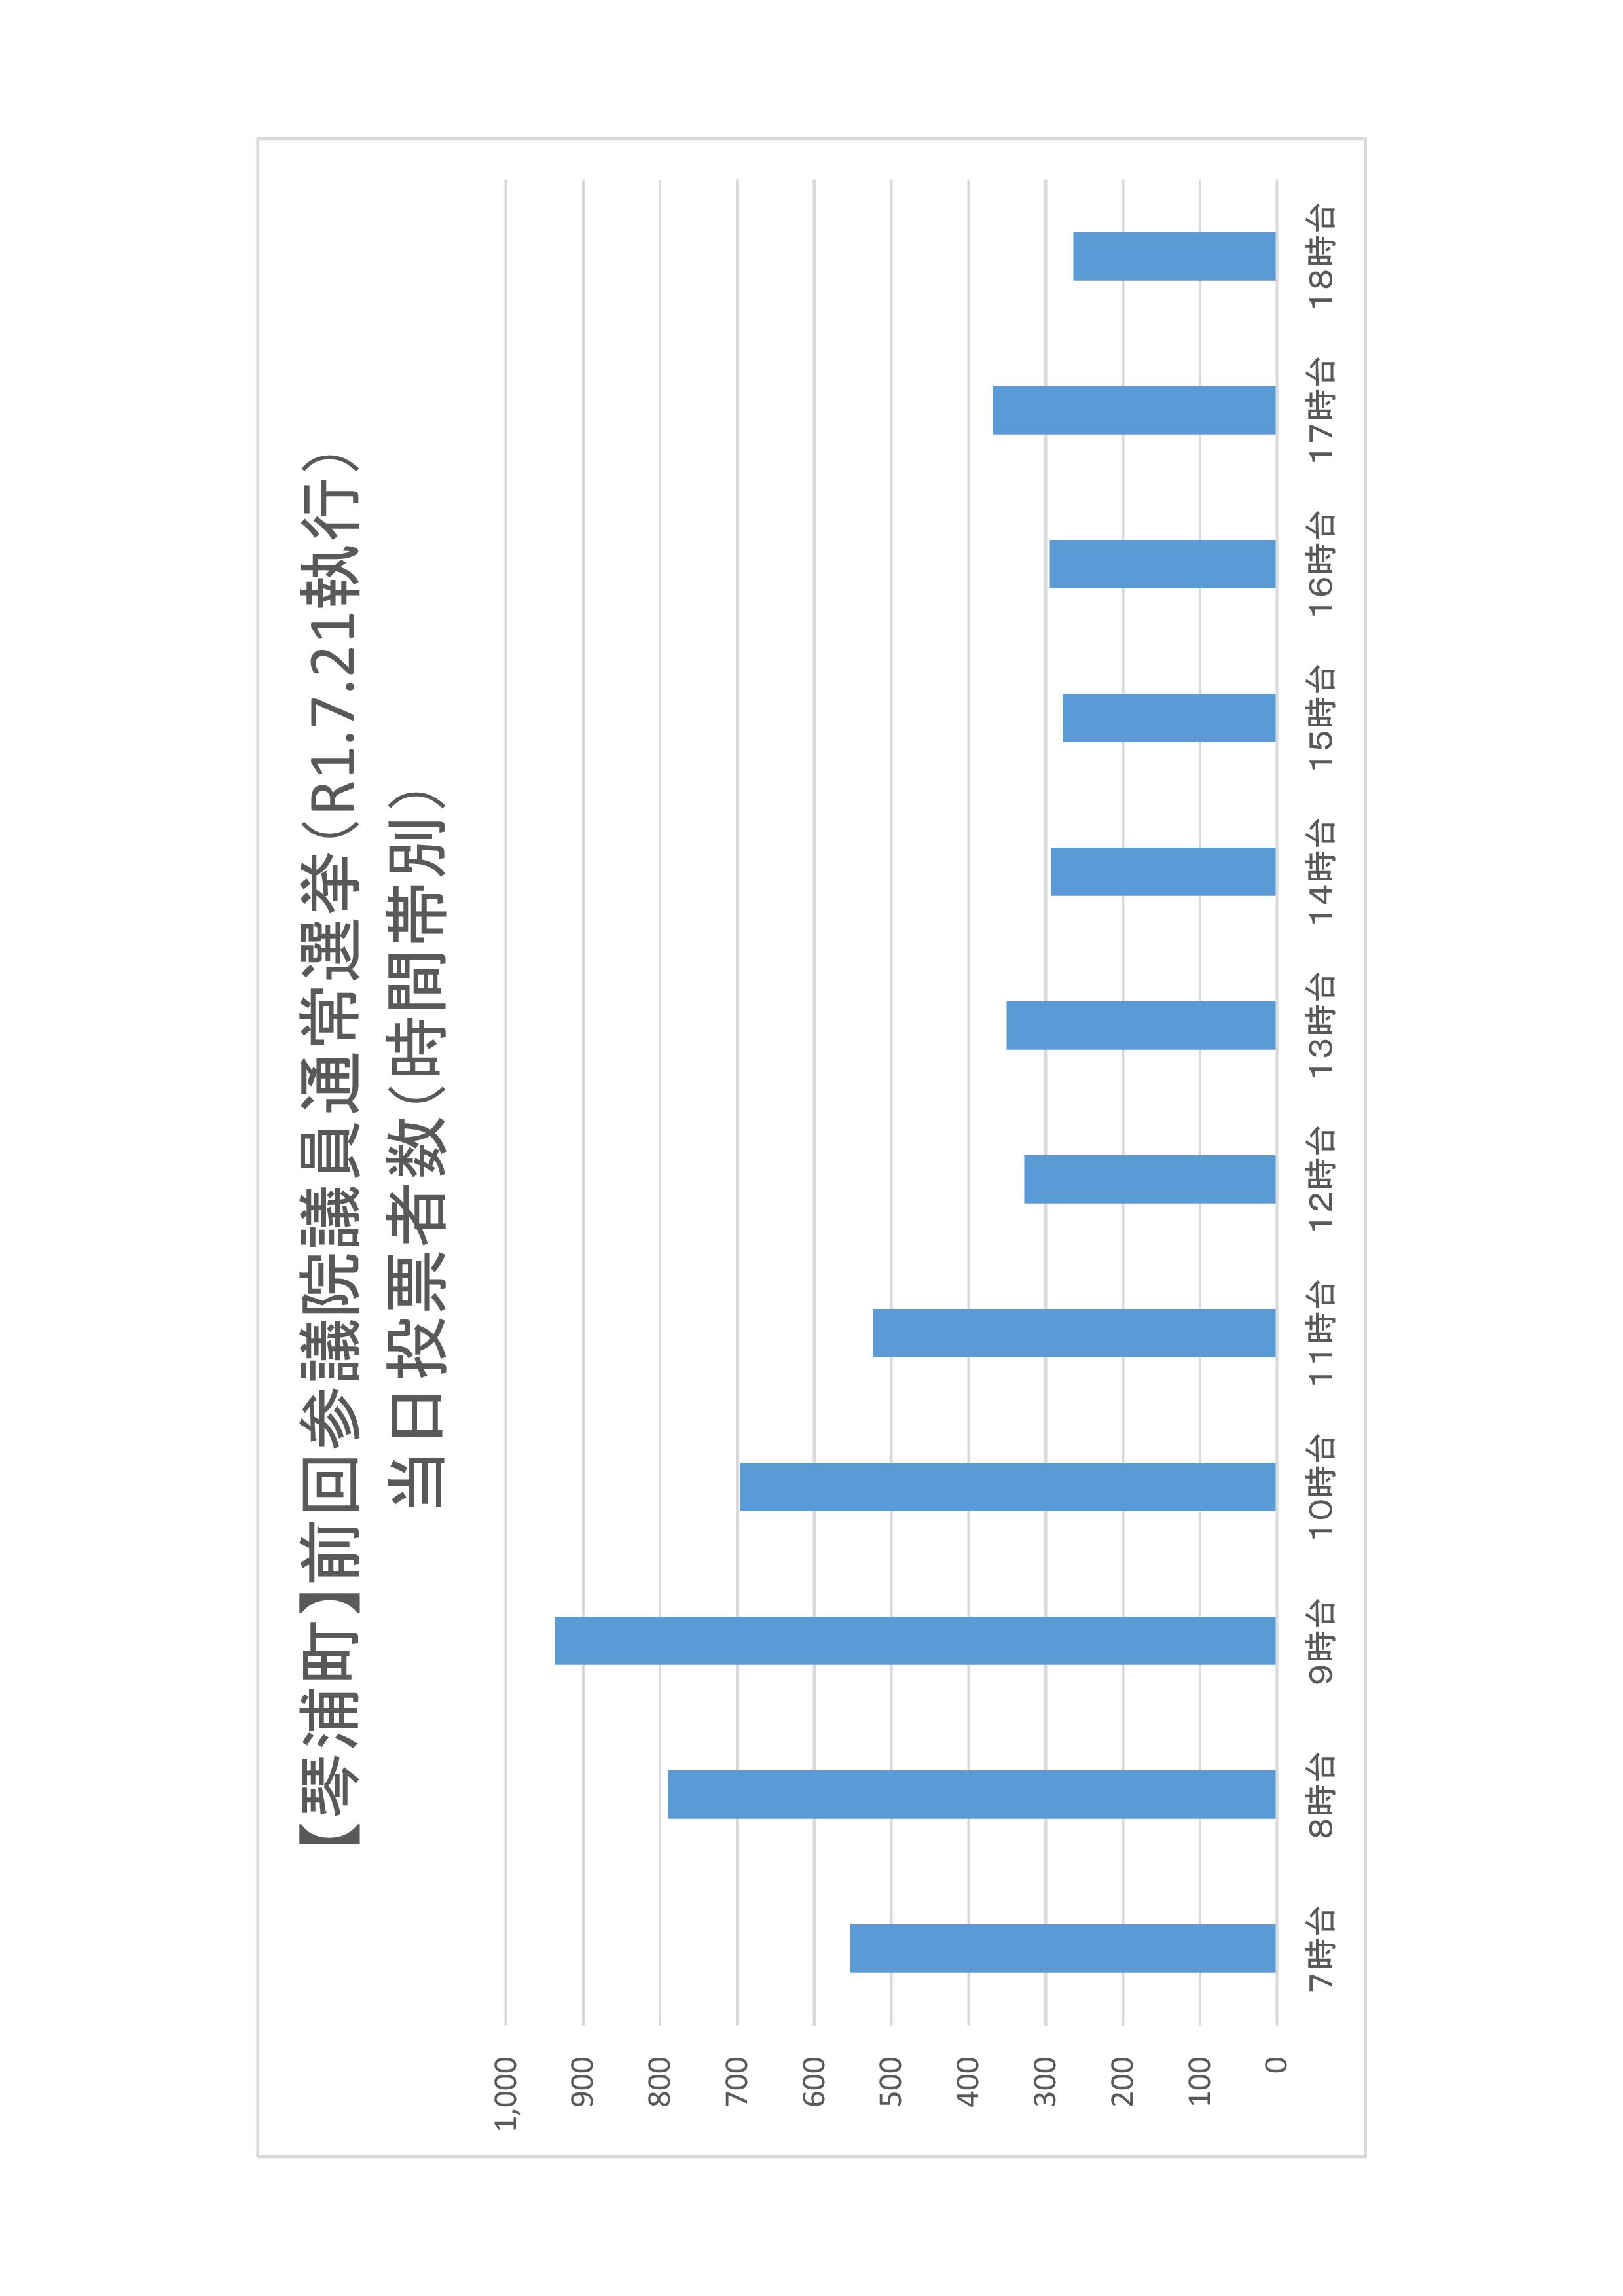 琴浦町の時間帯別当日投票者数のグラフ